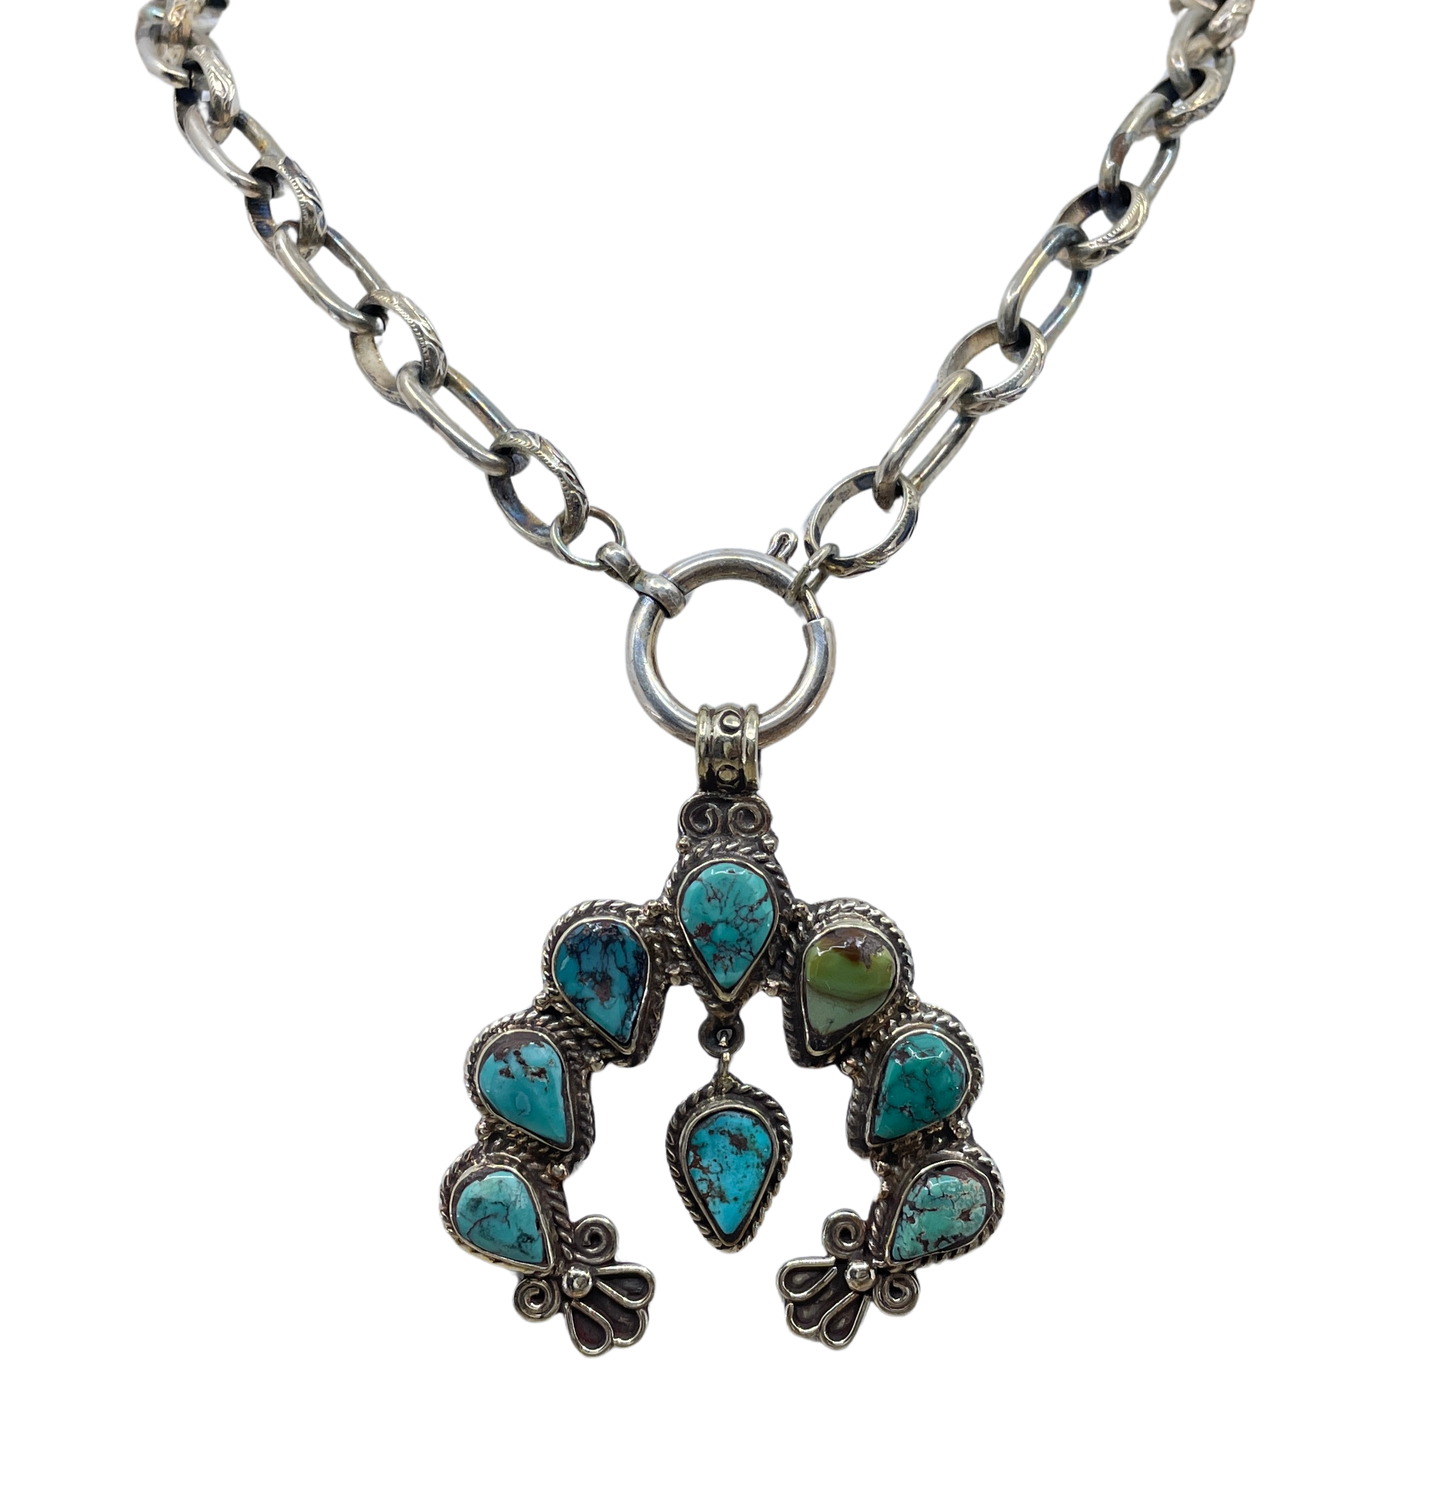 Vintage Turquoise Squash Blossom Pendant Necklace